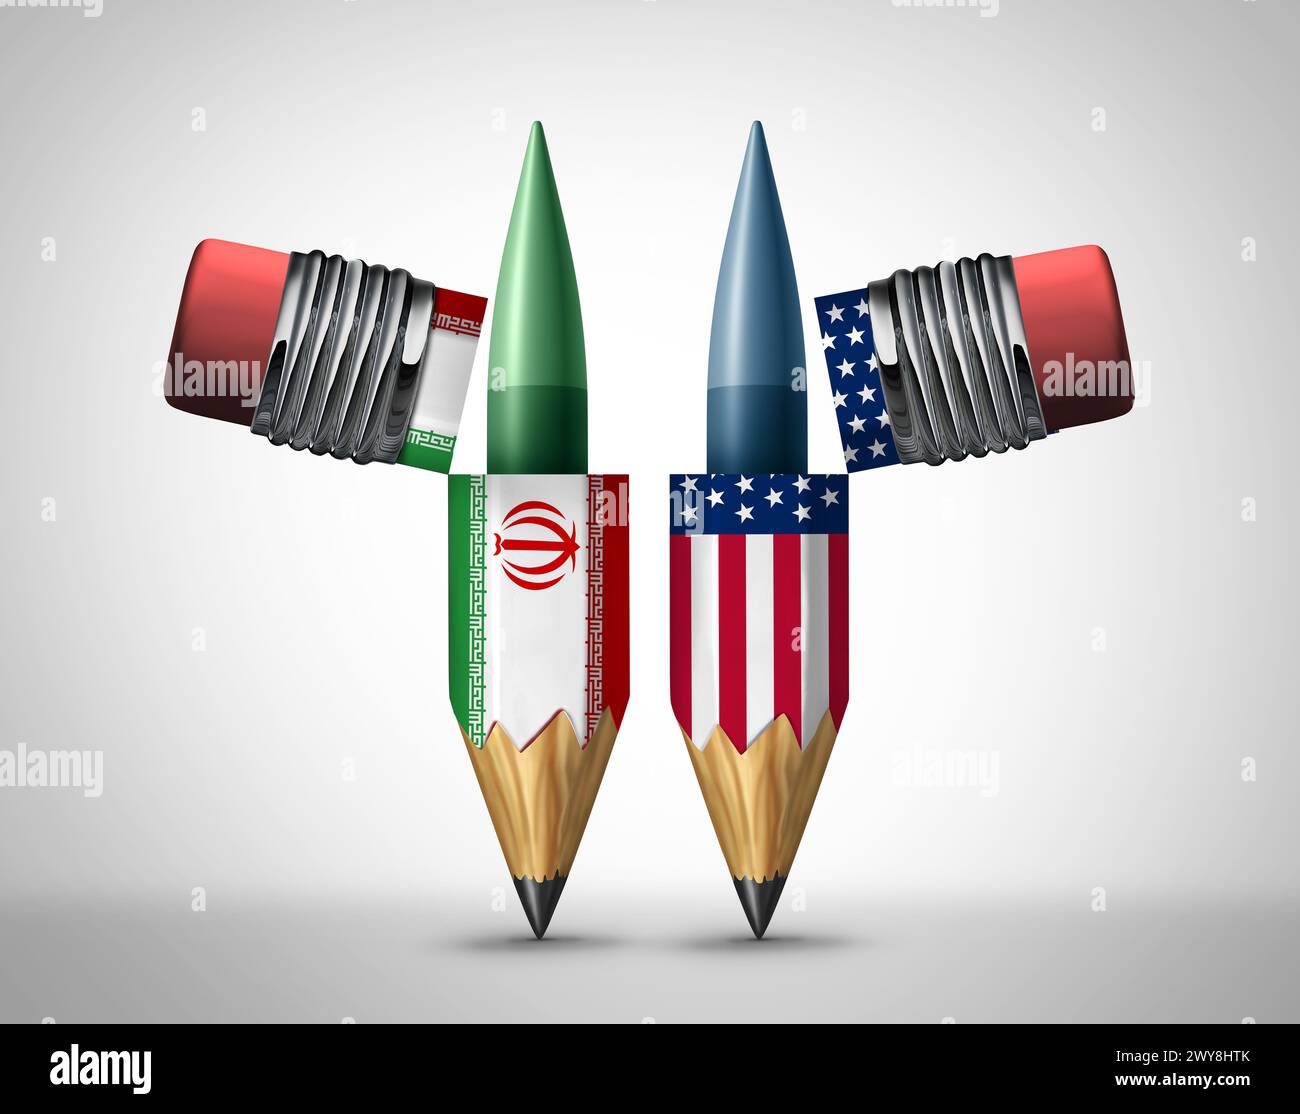 Iran diplomazia o guerra degli Stati Uniti come armi americane e armi iraniane all'interno di matite che rappresentano gli strumenti per sfidare la diplomazia o il fallimento diplomatico ris Foto Stock